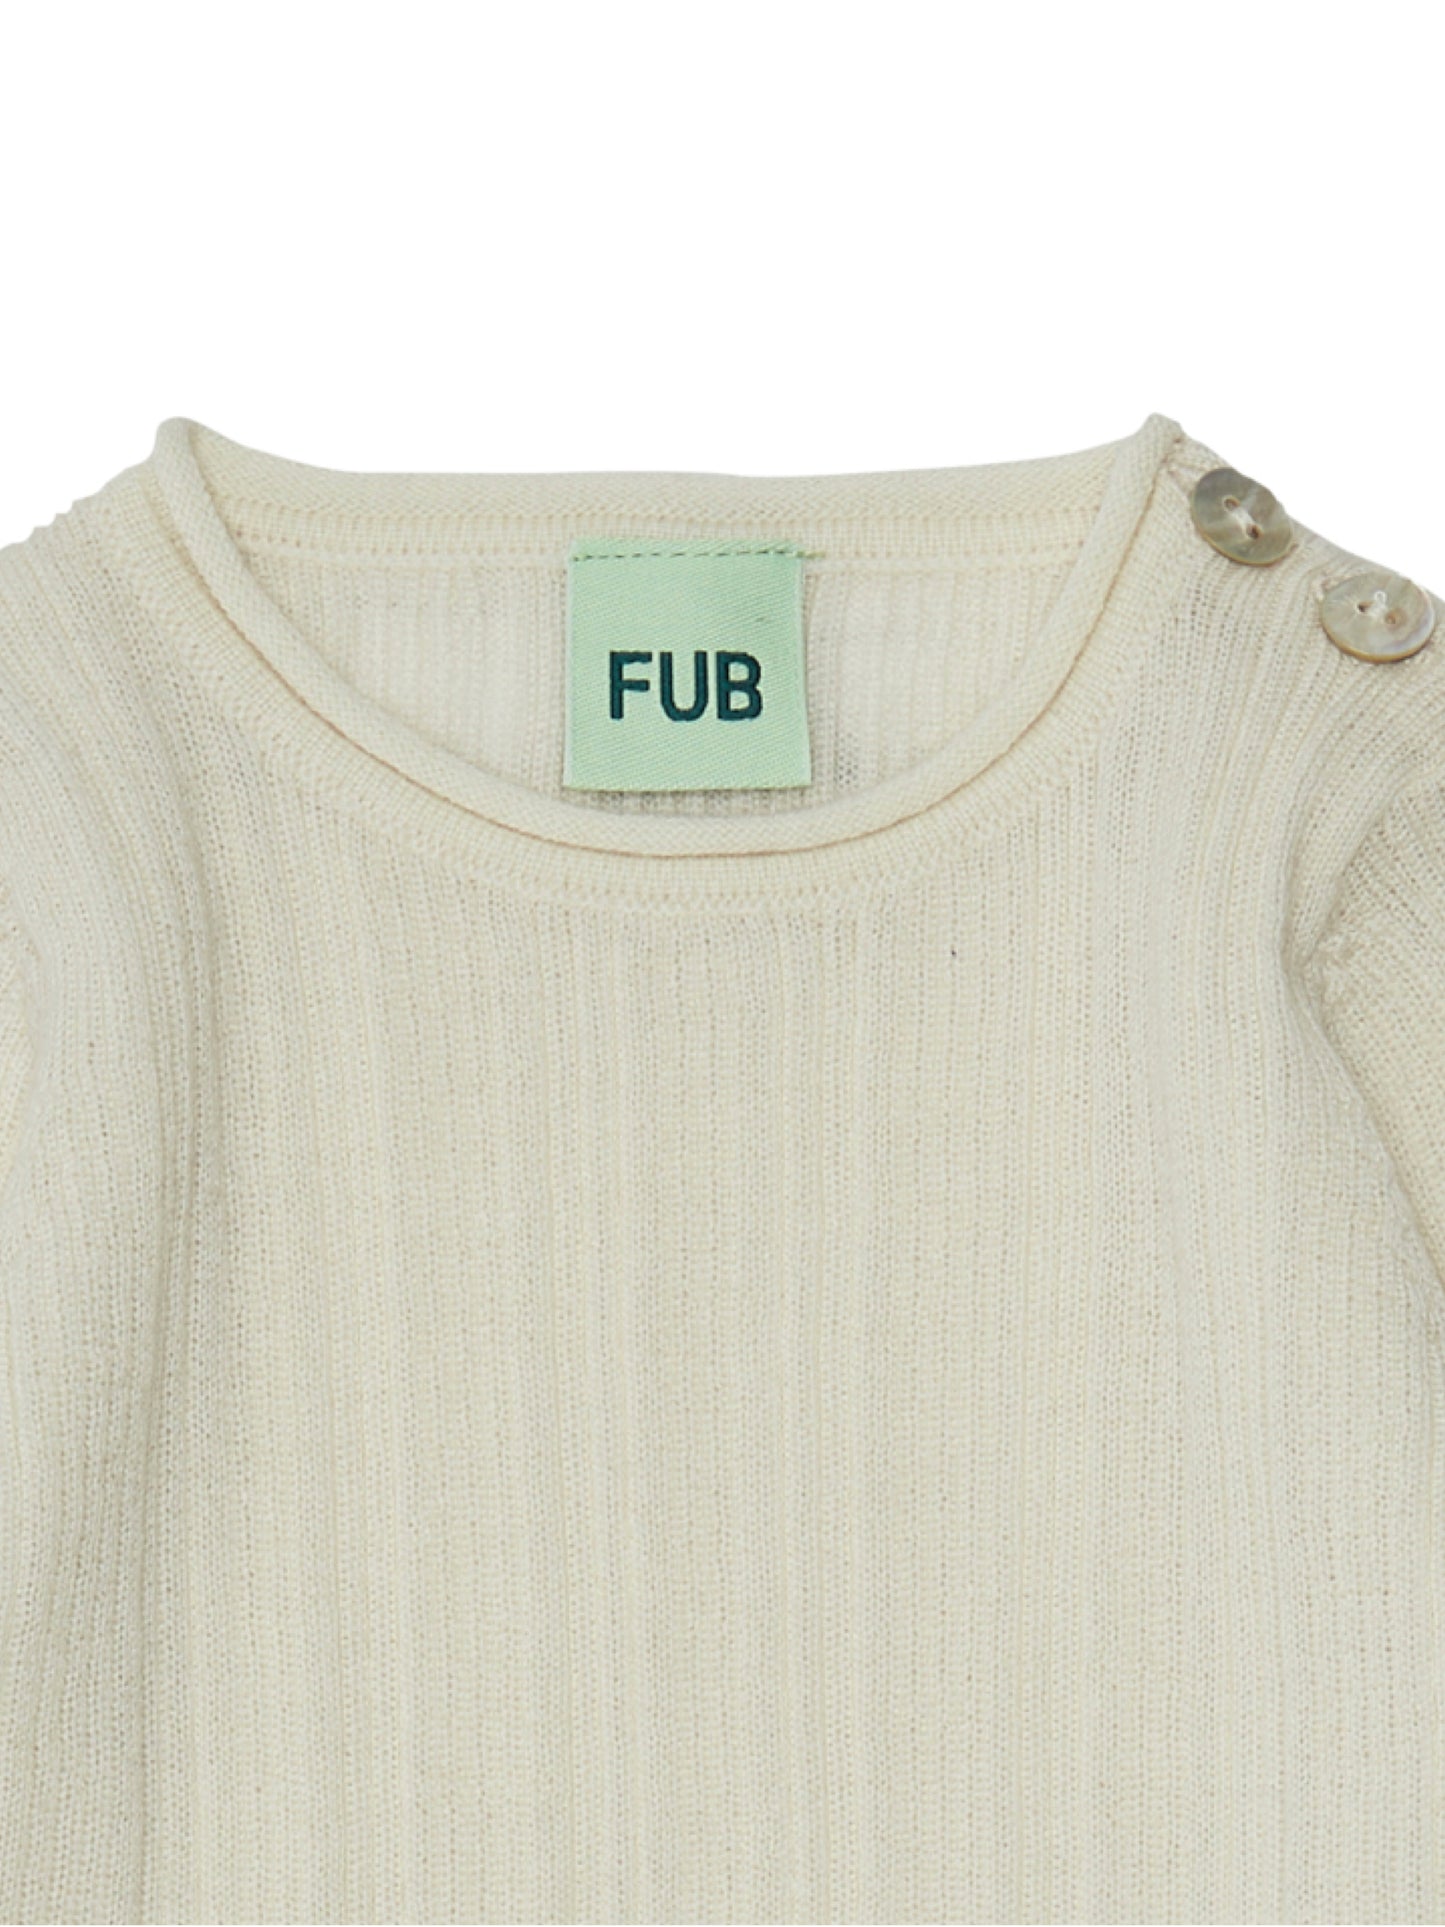 FUB - Wool baby rib body - Ecru